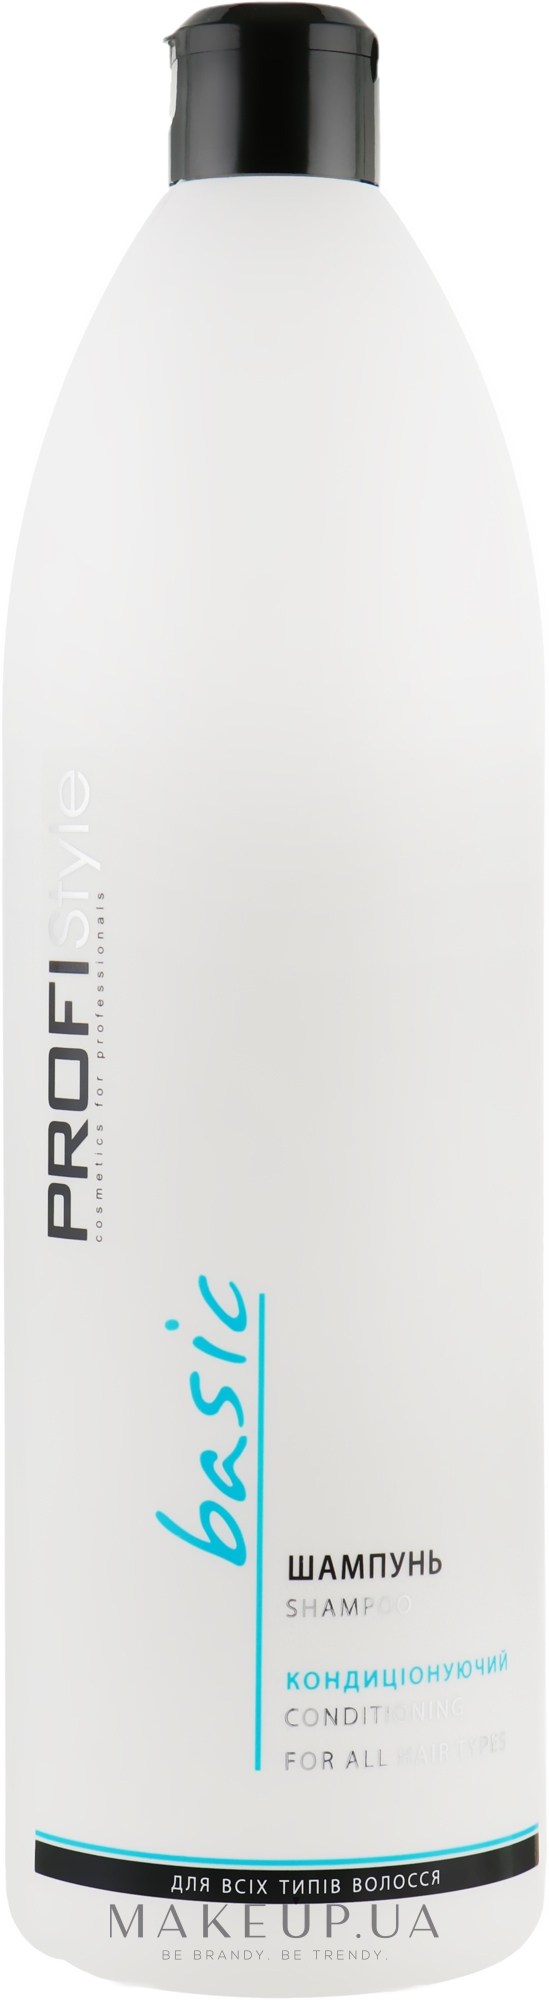 Шампунь с провитамином В5 кондиционирующий для всех типов волос - Profi style — фото 1000ml